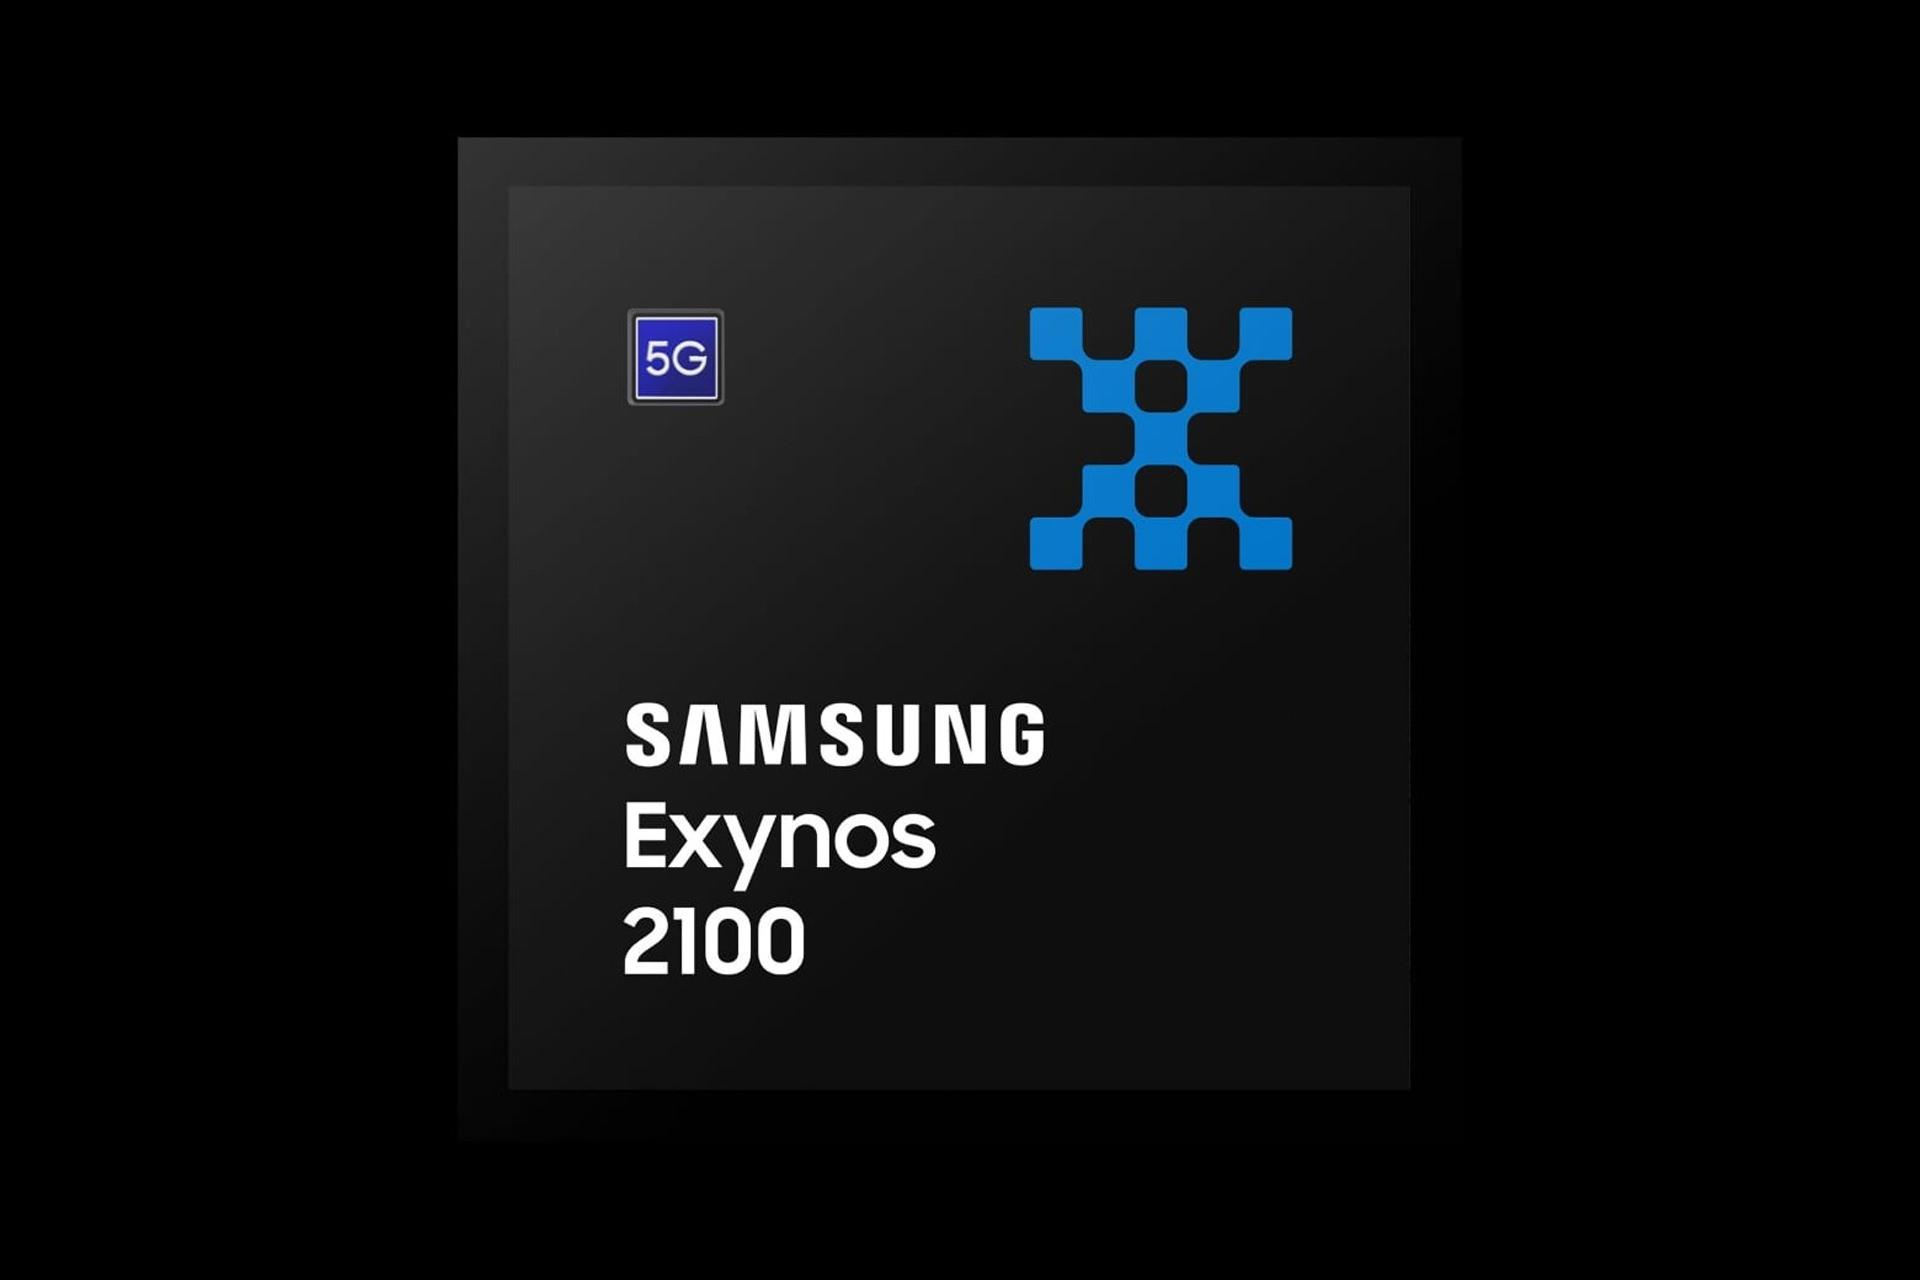 پردازنده اکسینوس 2100 با مودم 5G مجتمع، لیتوگرافی پنج نانومتری و هسته کورتکس X1 معرفی شد